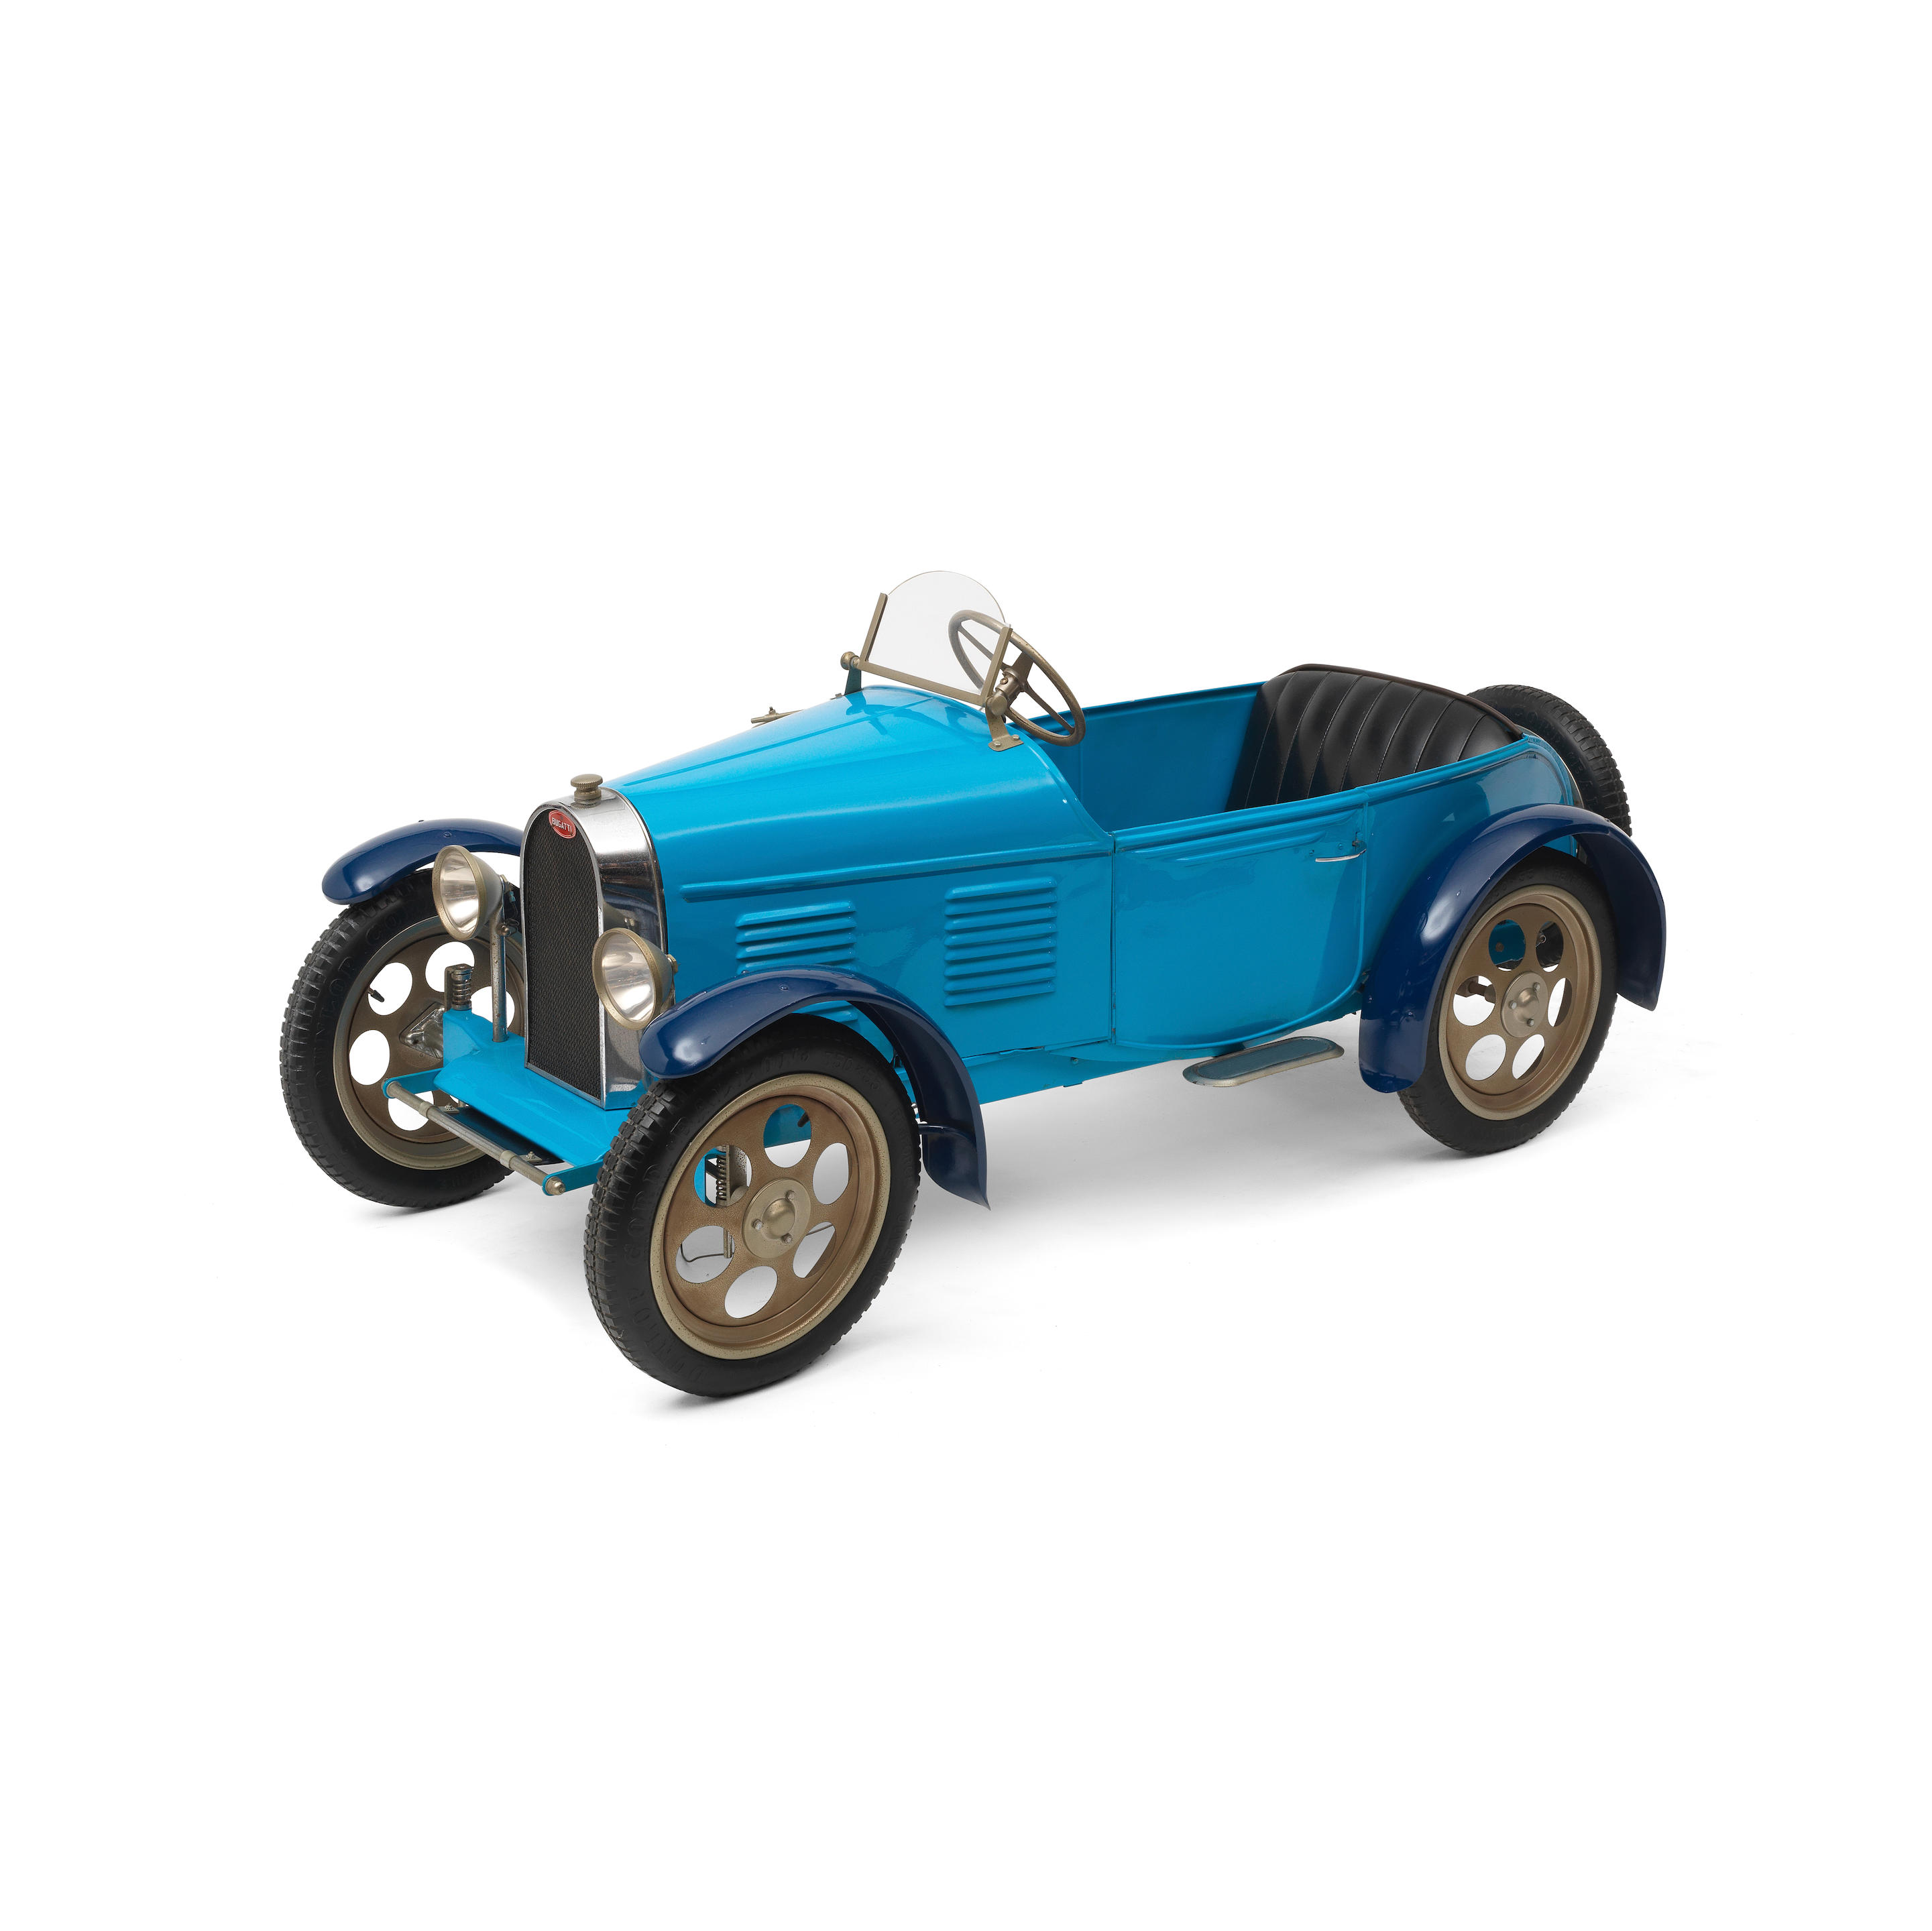 Bonhams Cars : A Bugatti Type 43 pedal car by Eureka, French, circa ...